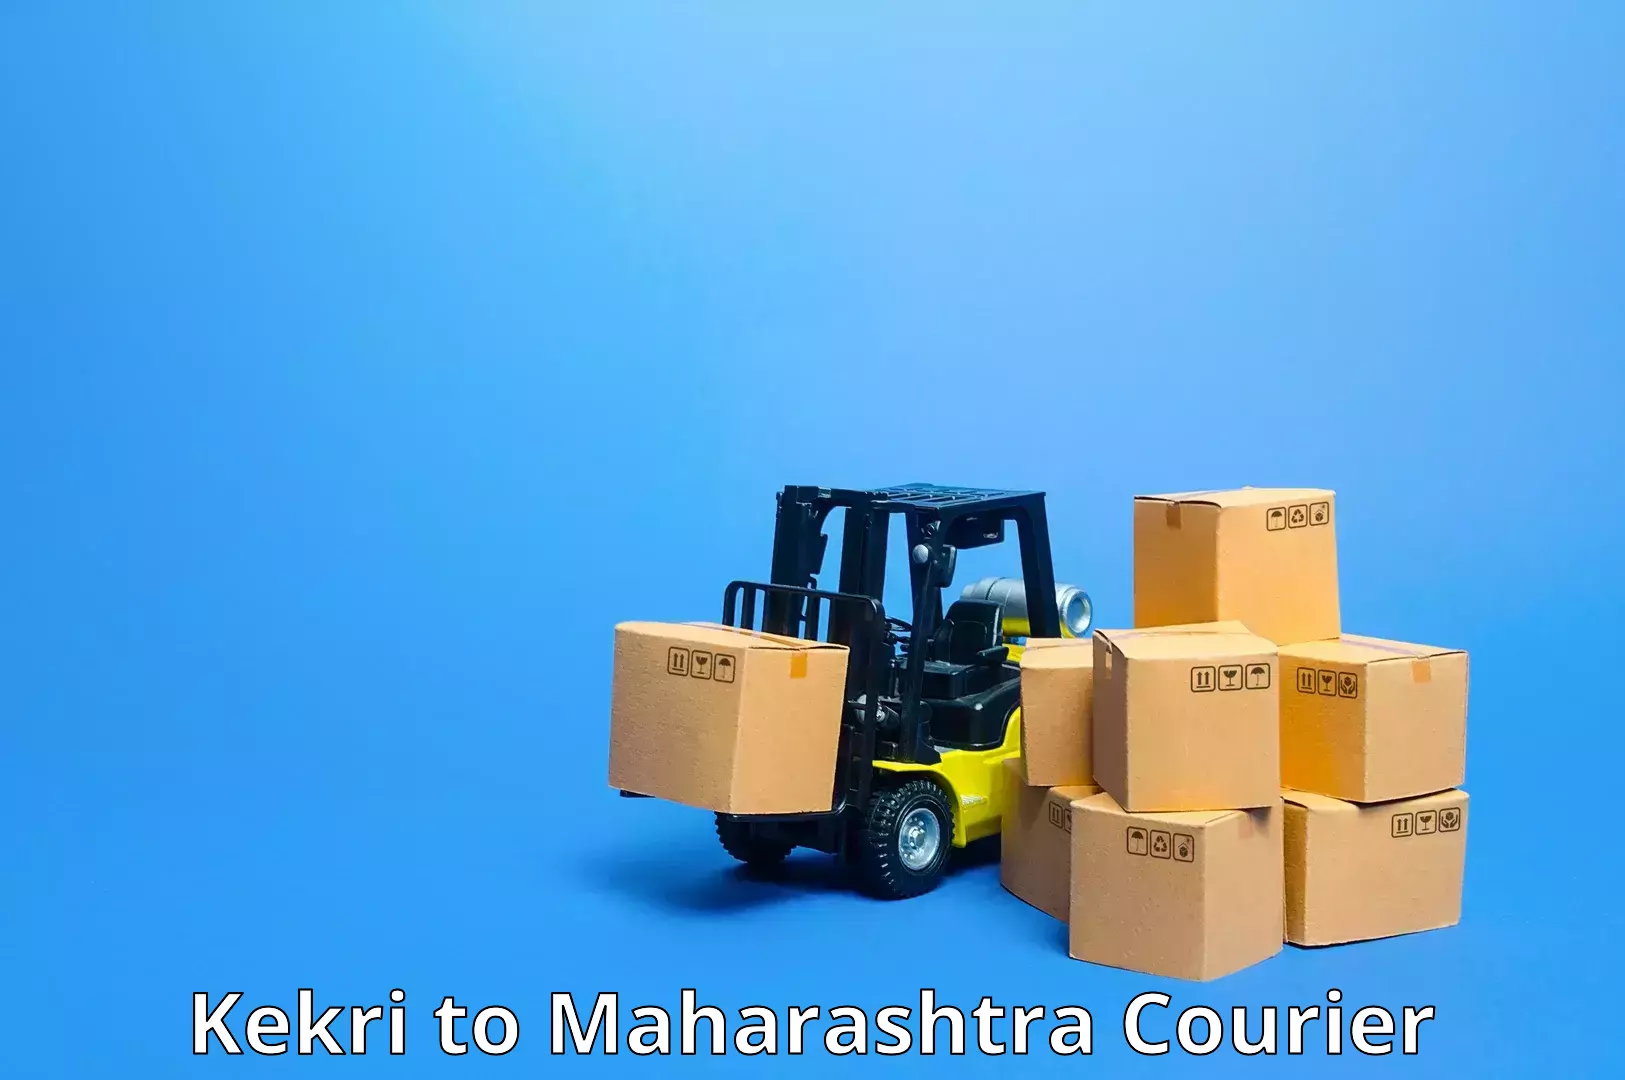 Professional parcel services Kekri to Chembur